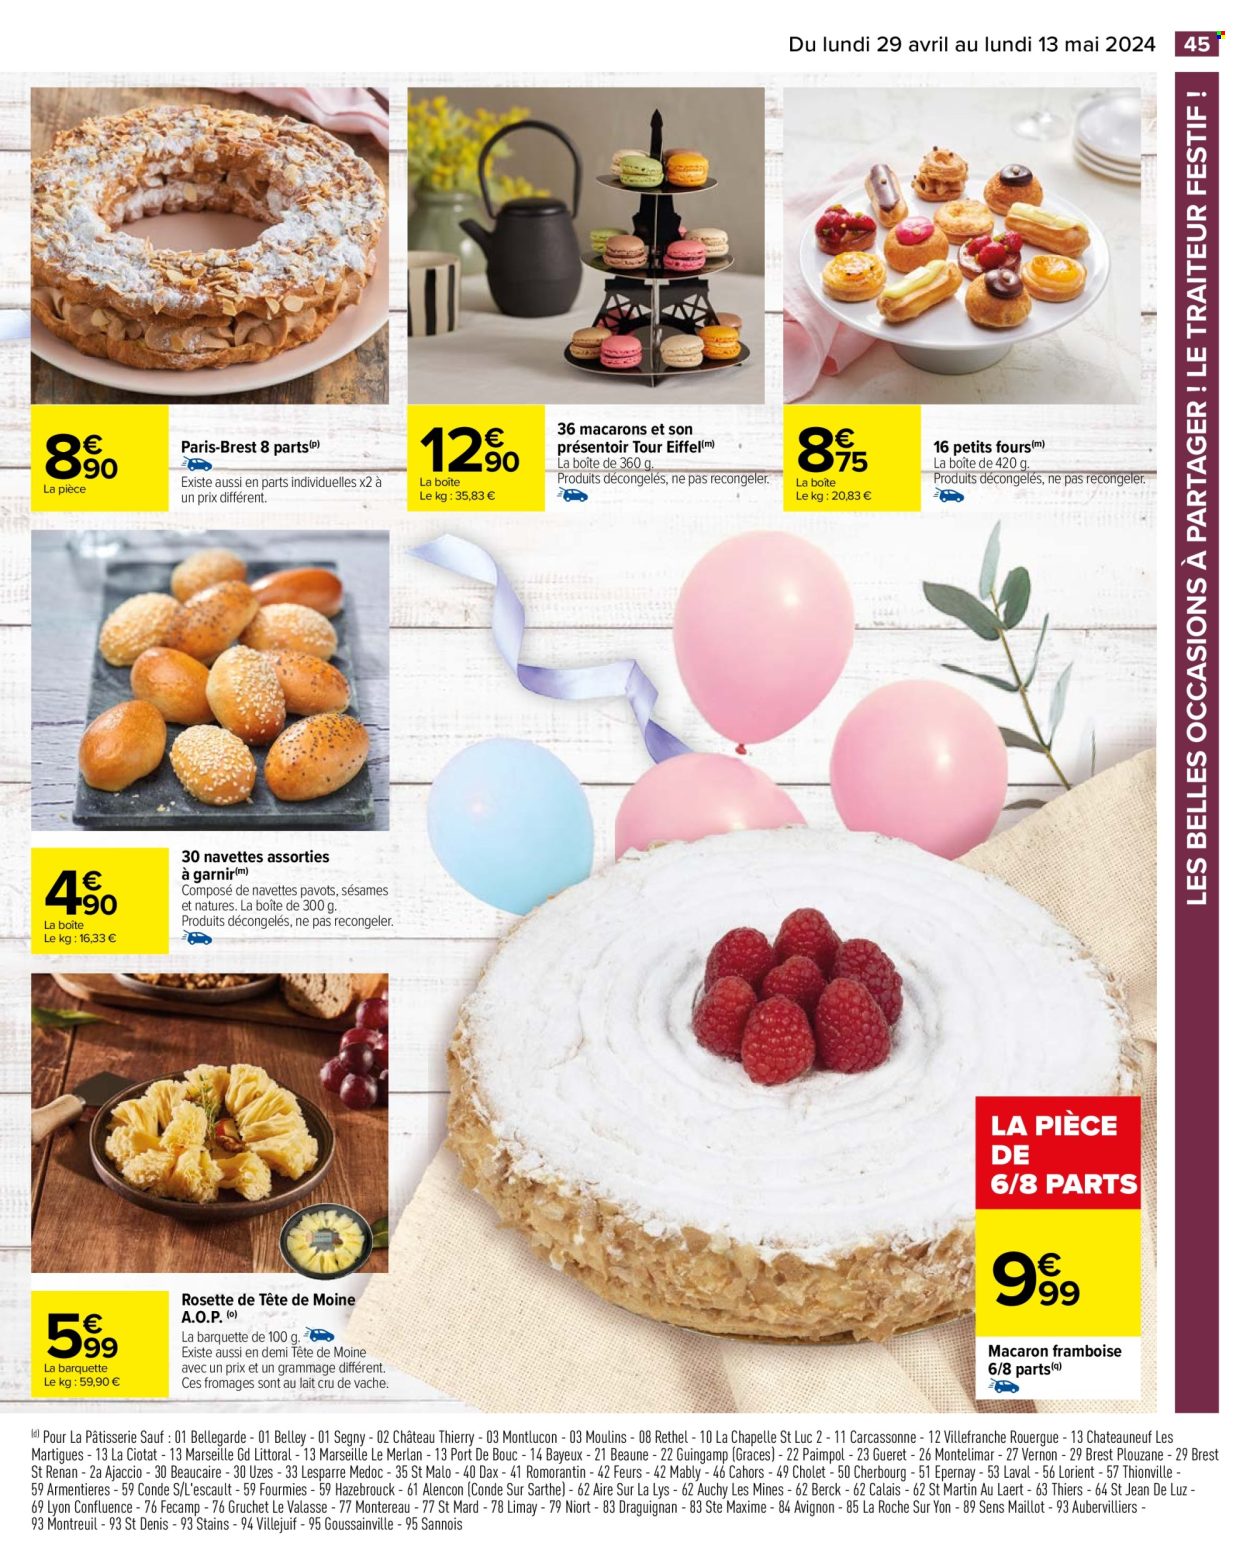 thumbnail - Catalogue Carrefour Hypermarchés - 29/04/2024 - 13/05/2024 - Produits soldés - macarons, tarte Paris-Brest, petit four, pâtisserie salée, rosette, Tête de Moine. Page 49.